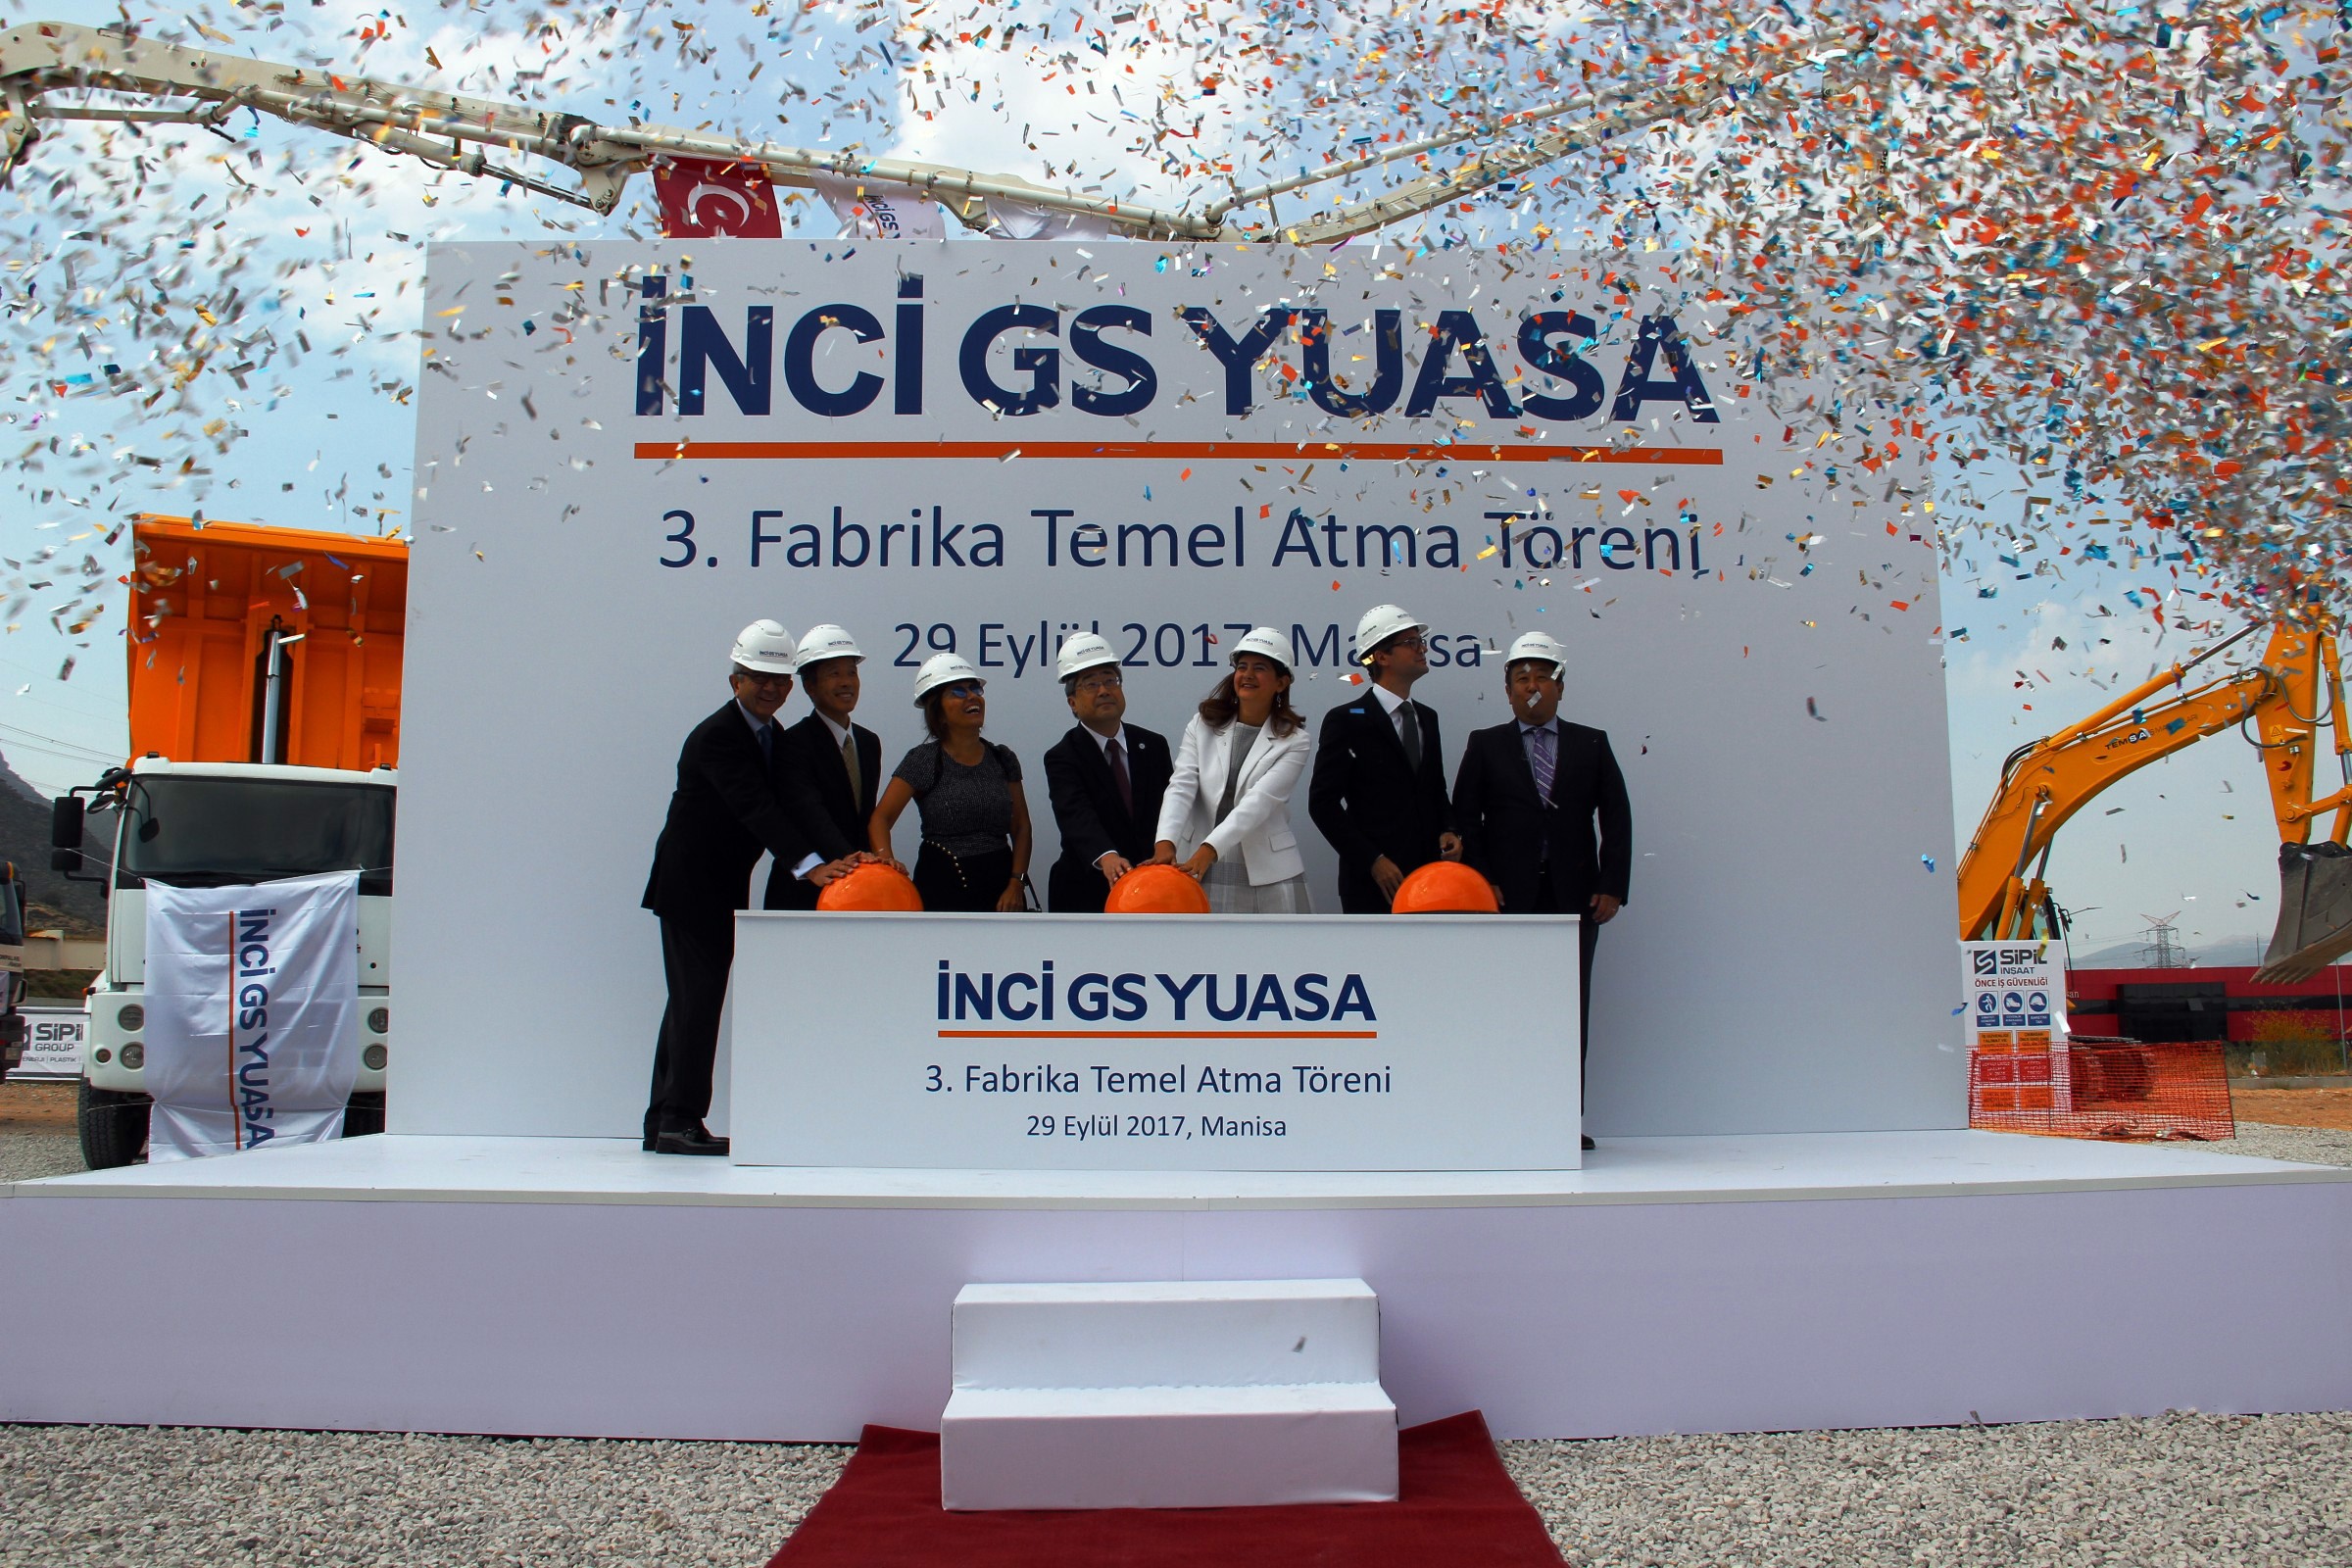 Manisa’da Türk-Japon ortaklığıyla 3 yılda 200 milyonluk yatırım-2430